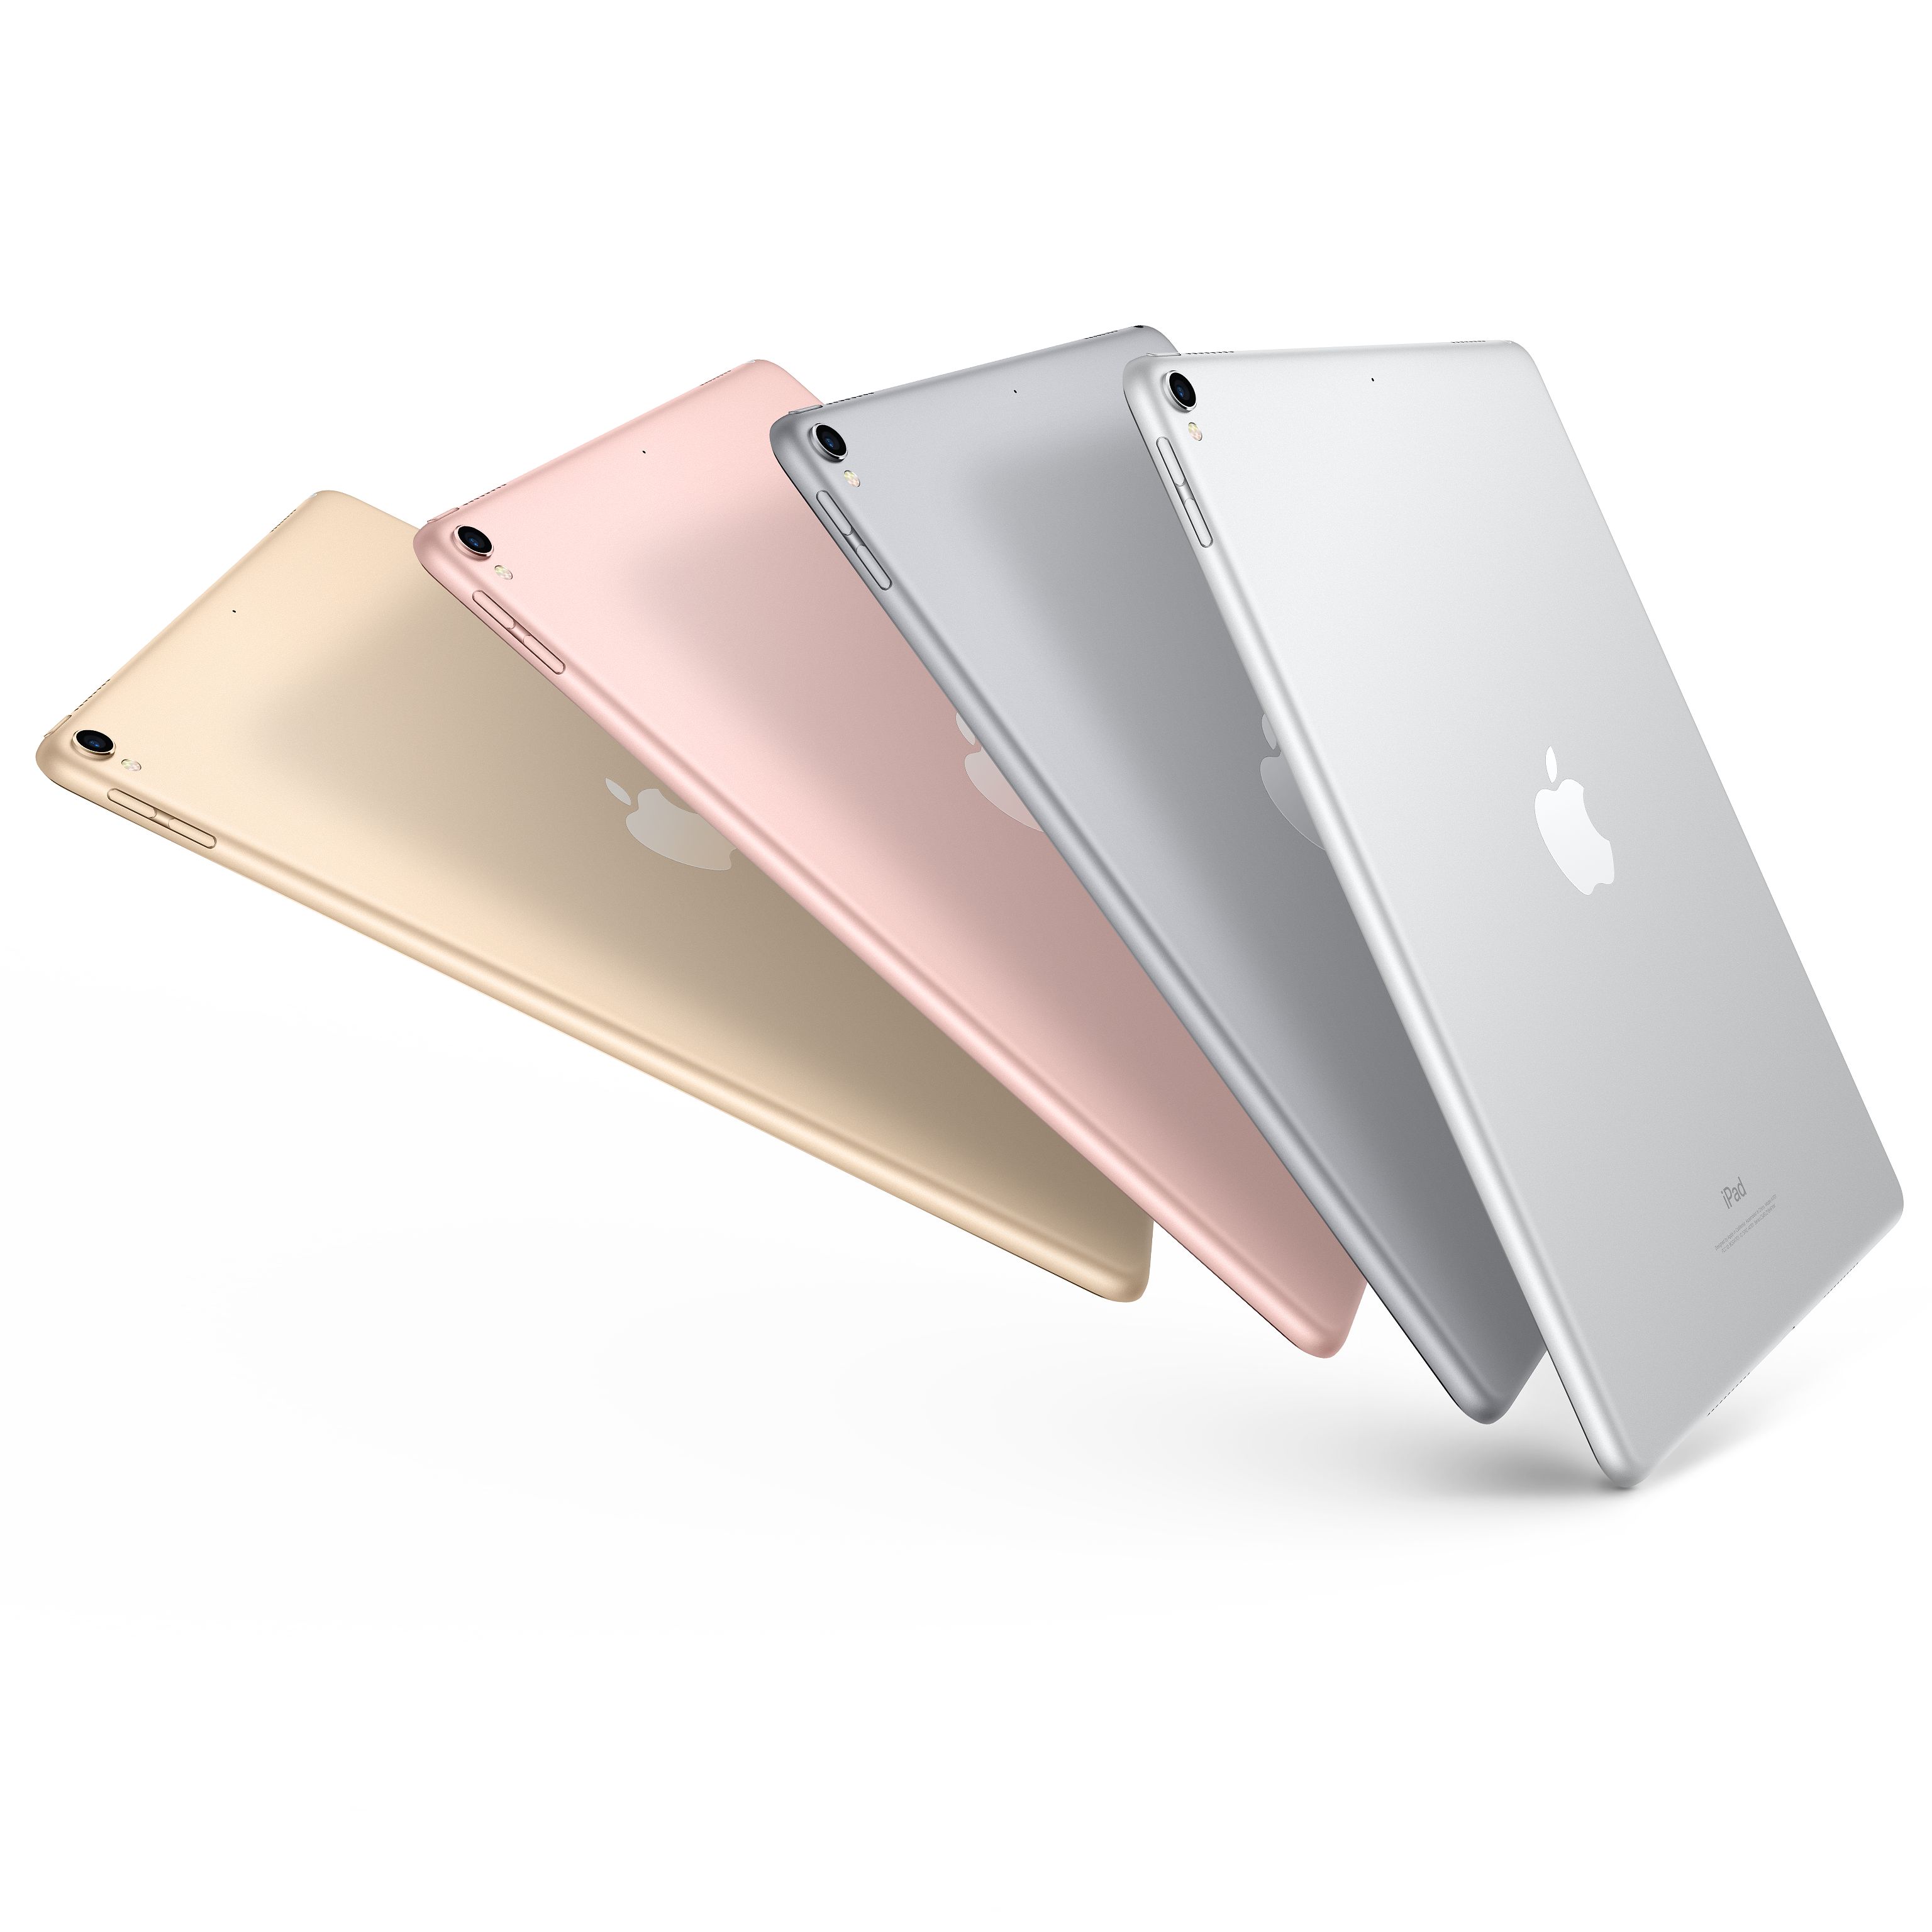 苹果(Apple) iPad pro 新款12.9英寸平板电脑 金色64GB WLAN版MQDD2CH/A